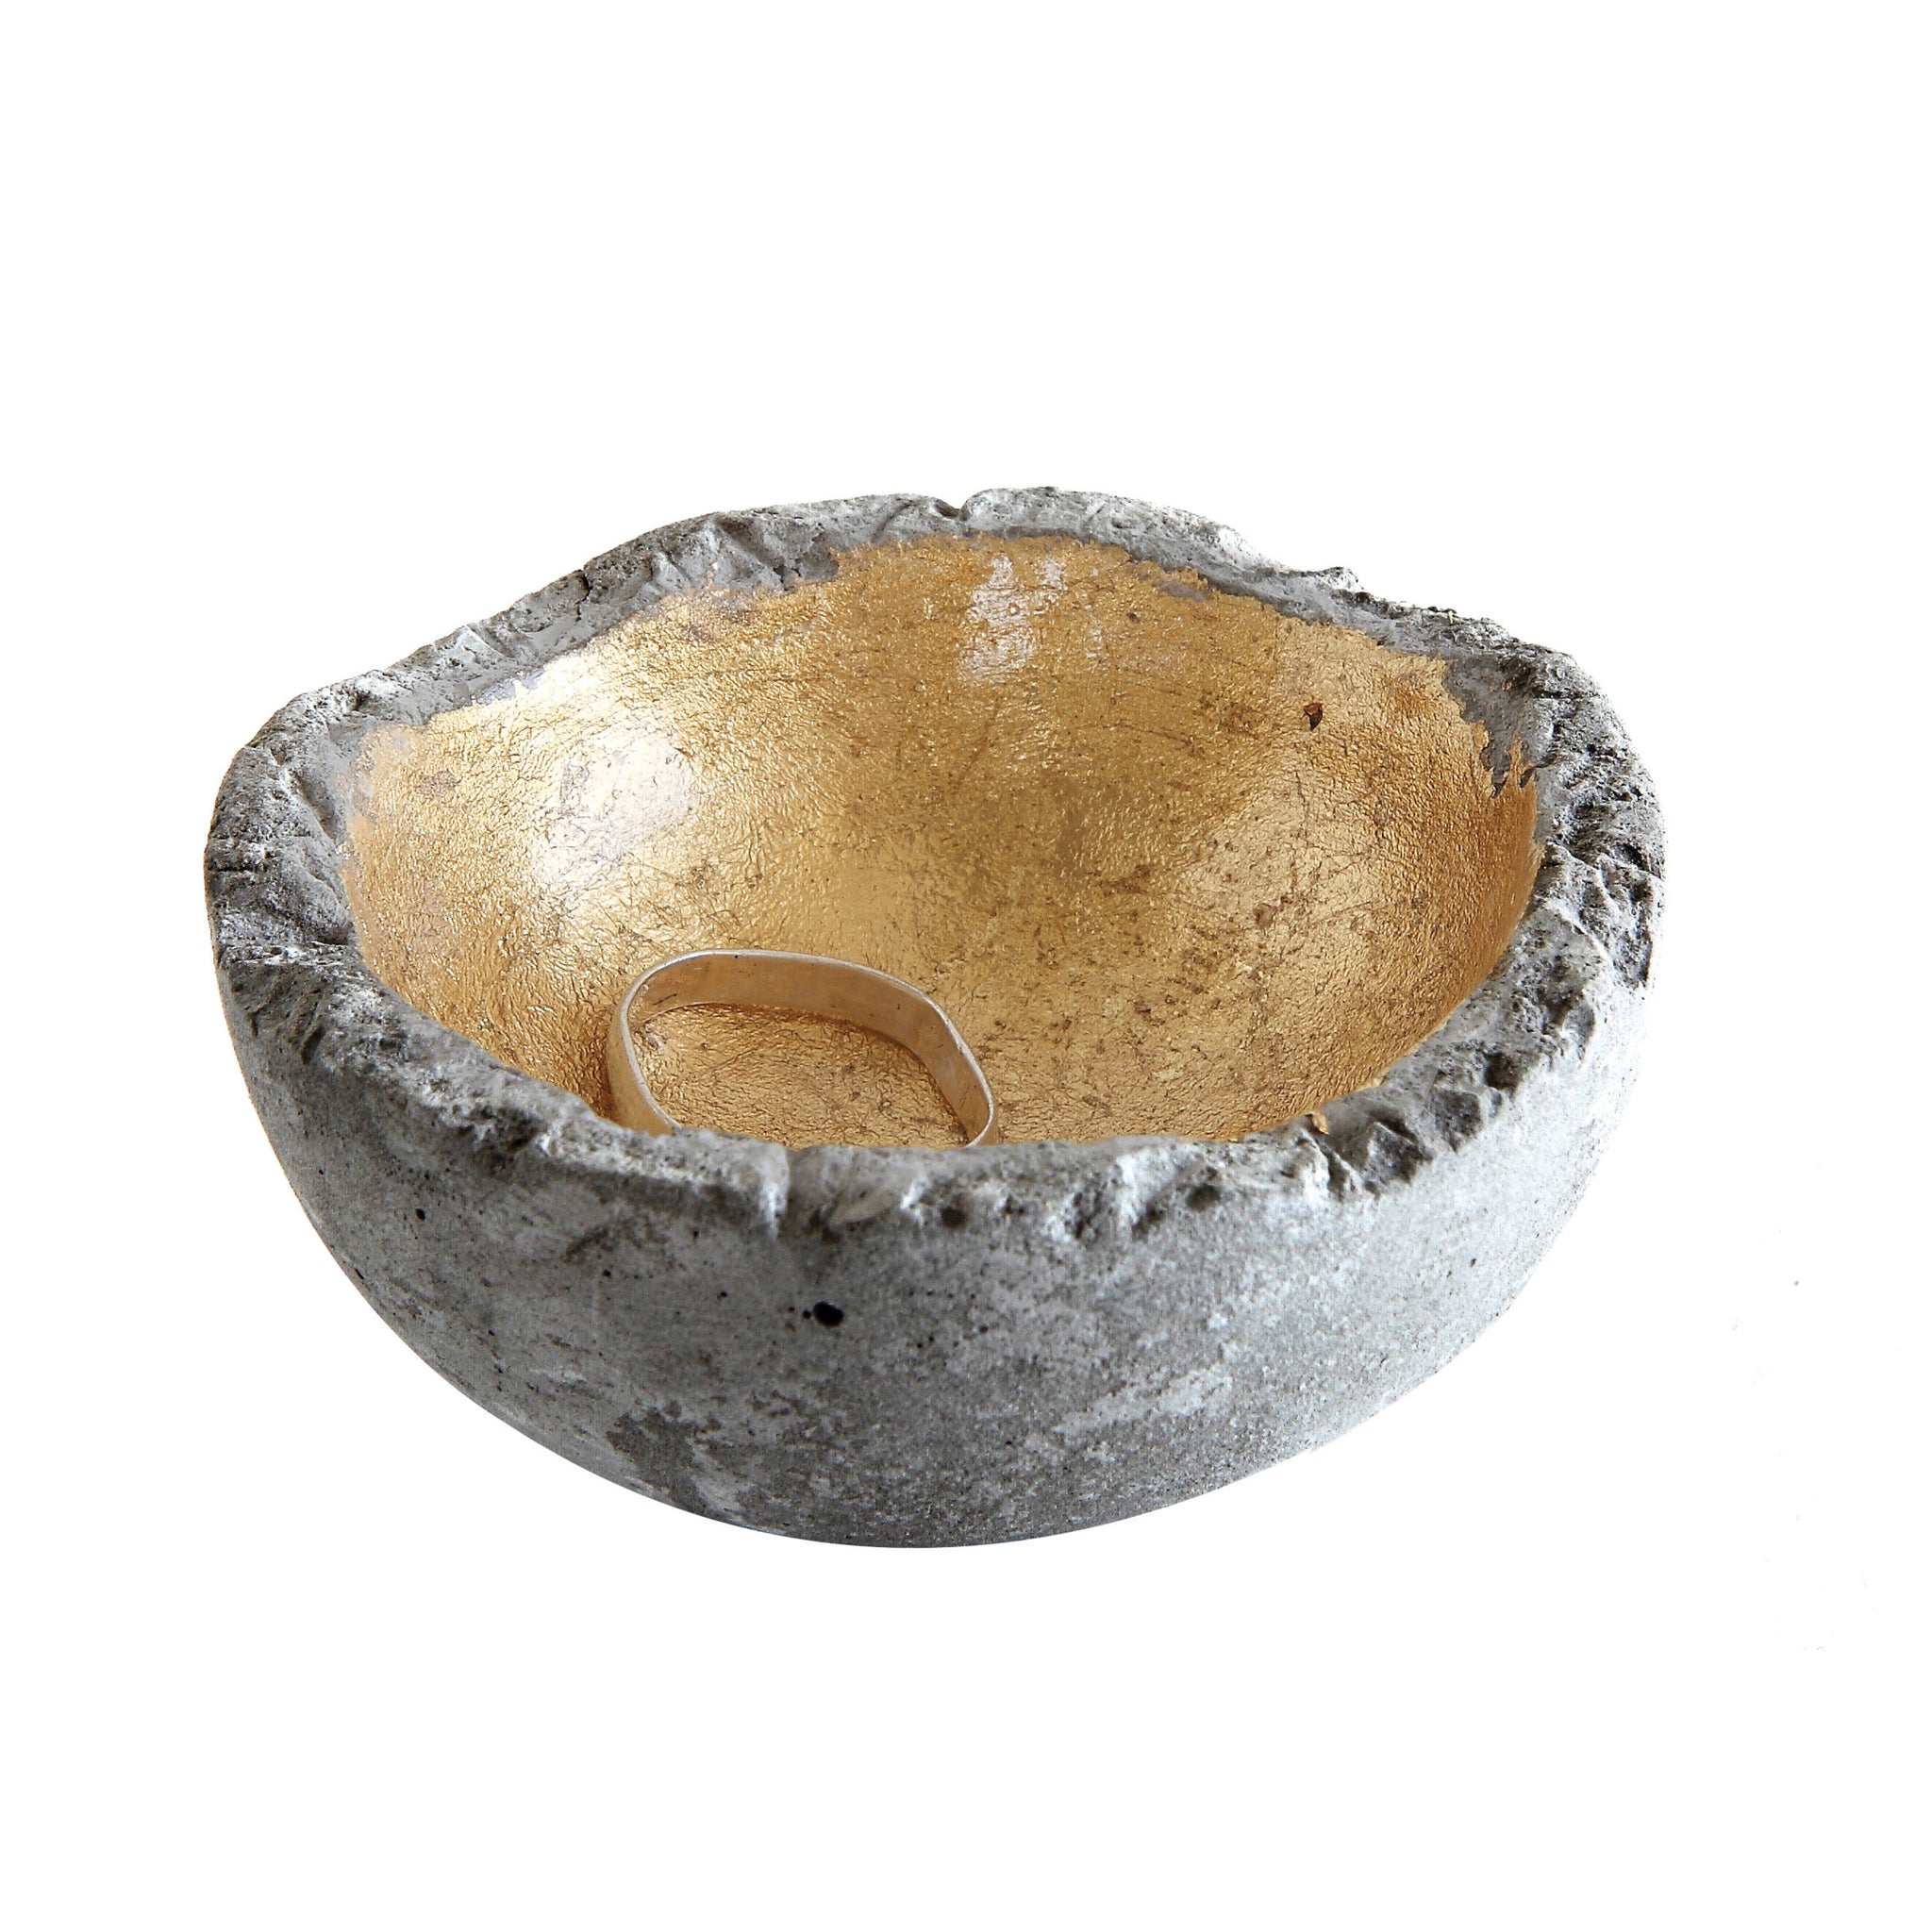 trinket bowl | cement + gold leaf